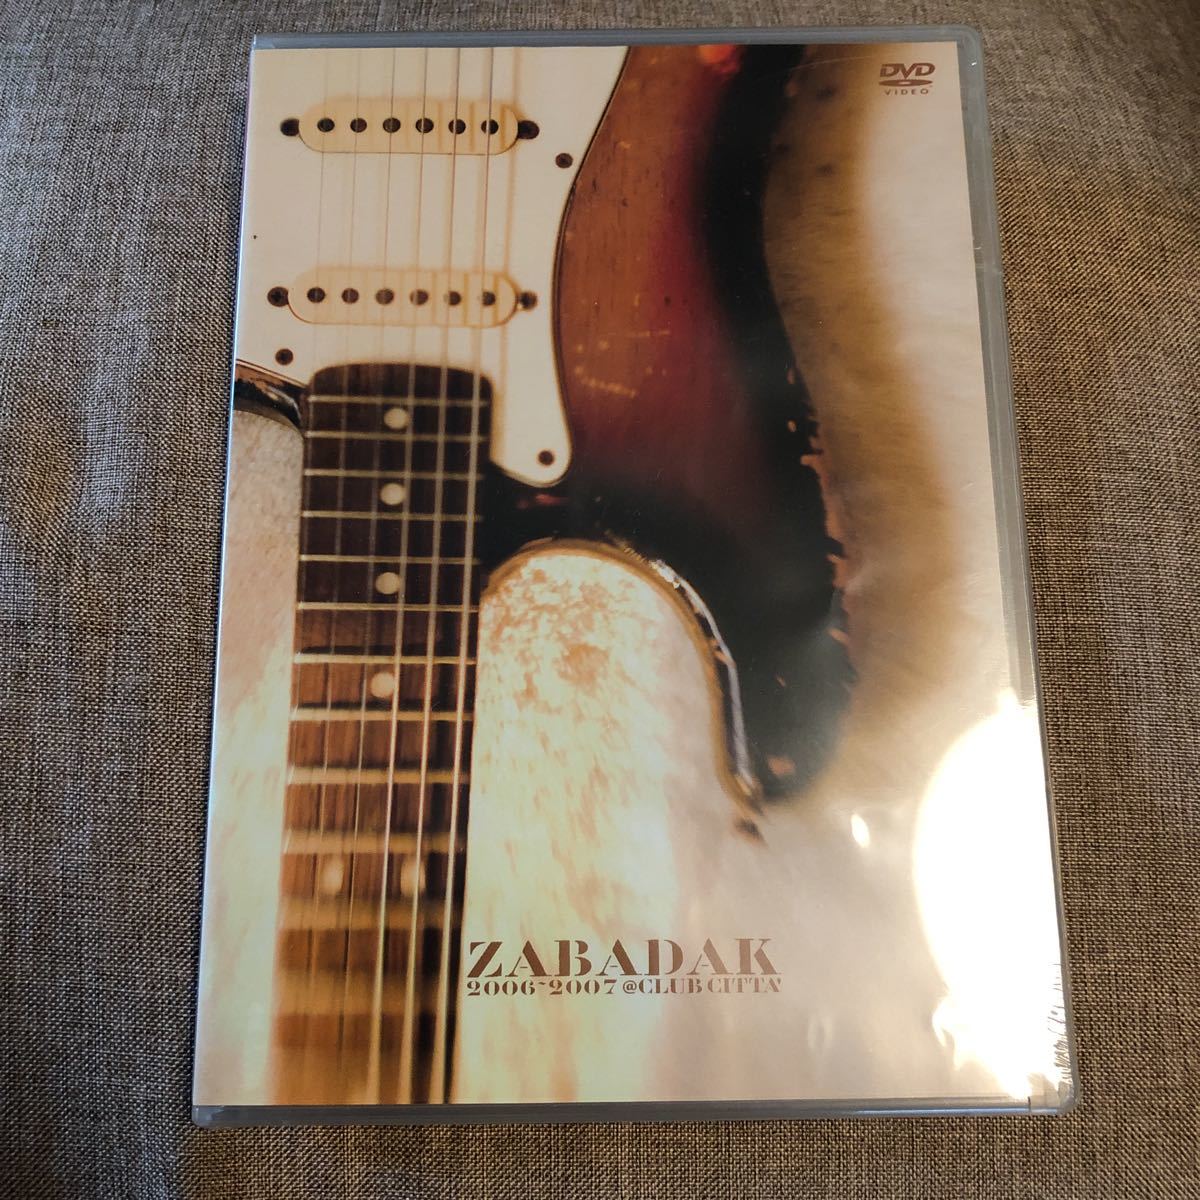  музыка DVD[ZABADAK 2006-2007 @CLUB CITTA\'] The ba Duck нераспечатанный новый товар LIVE